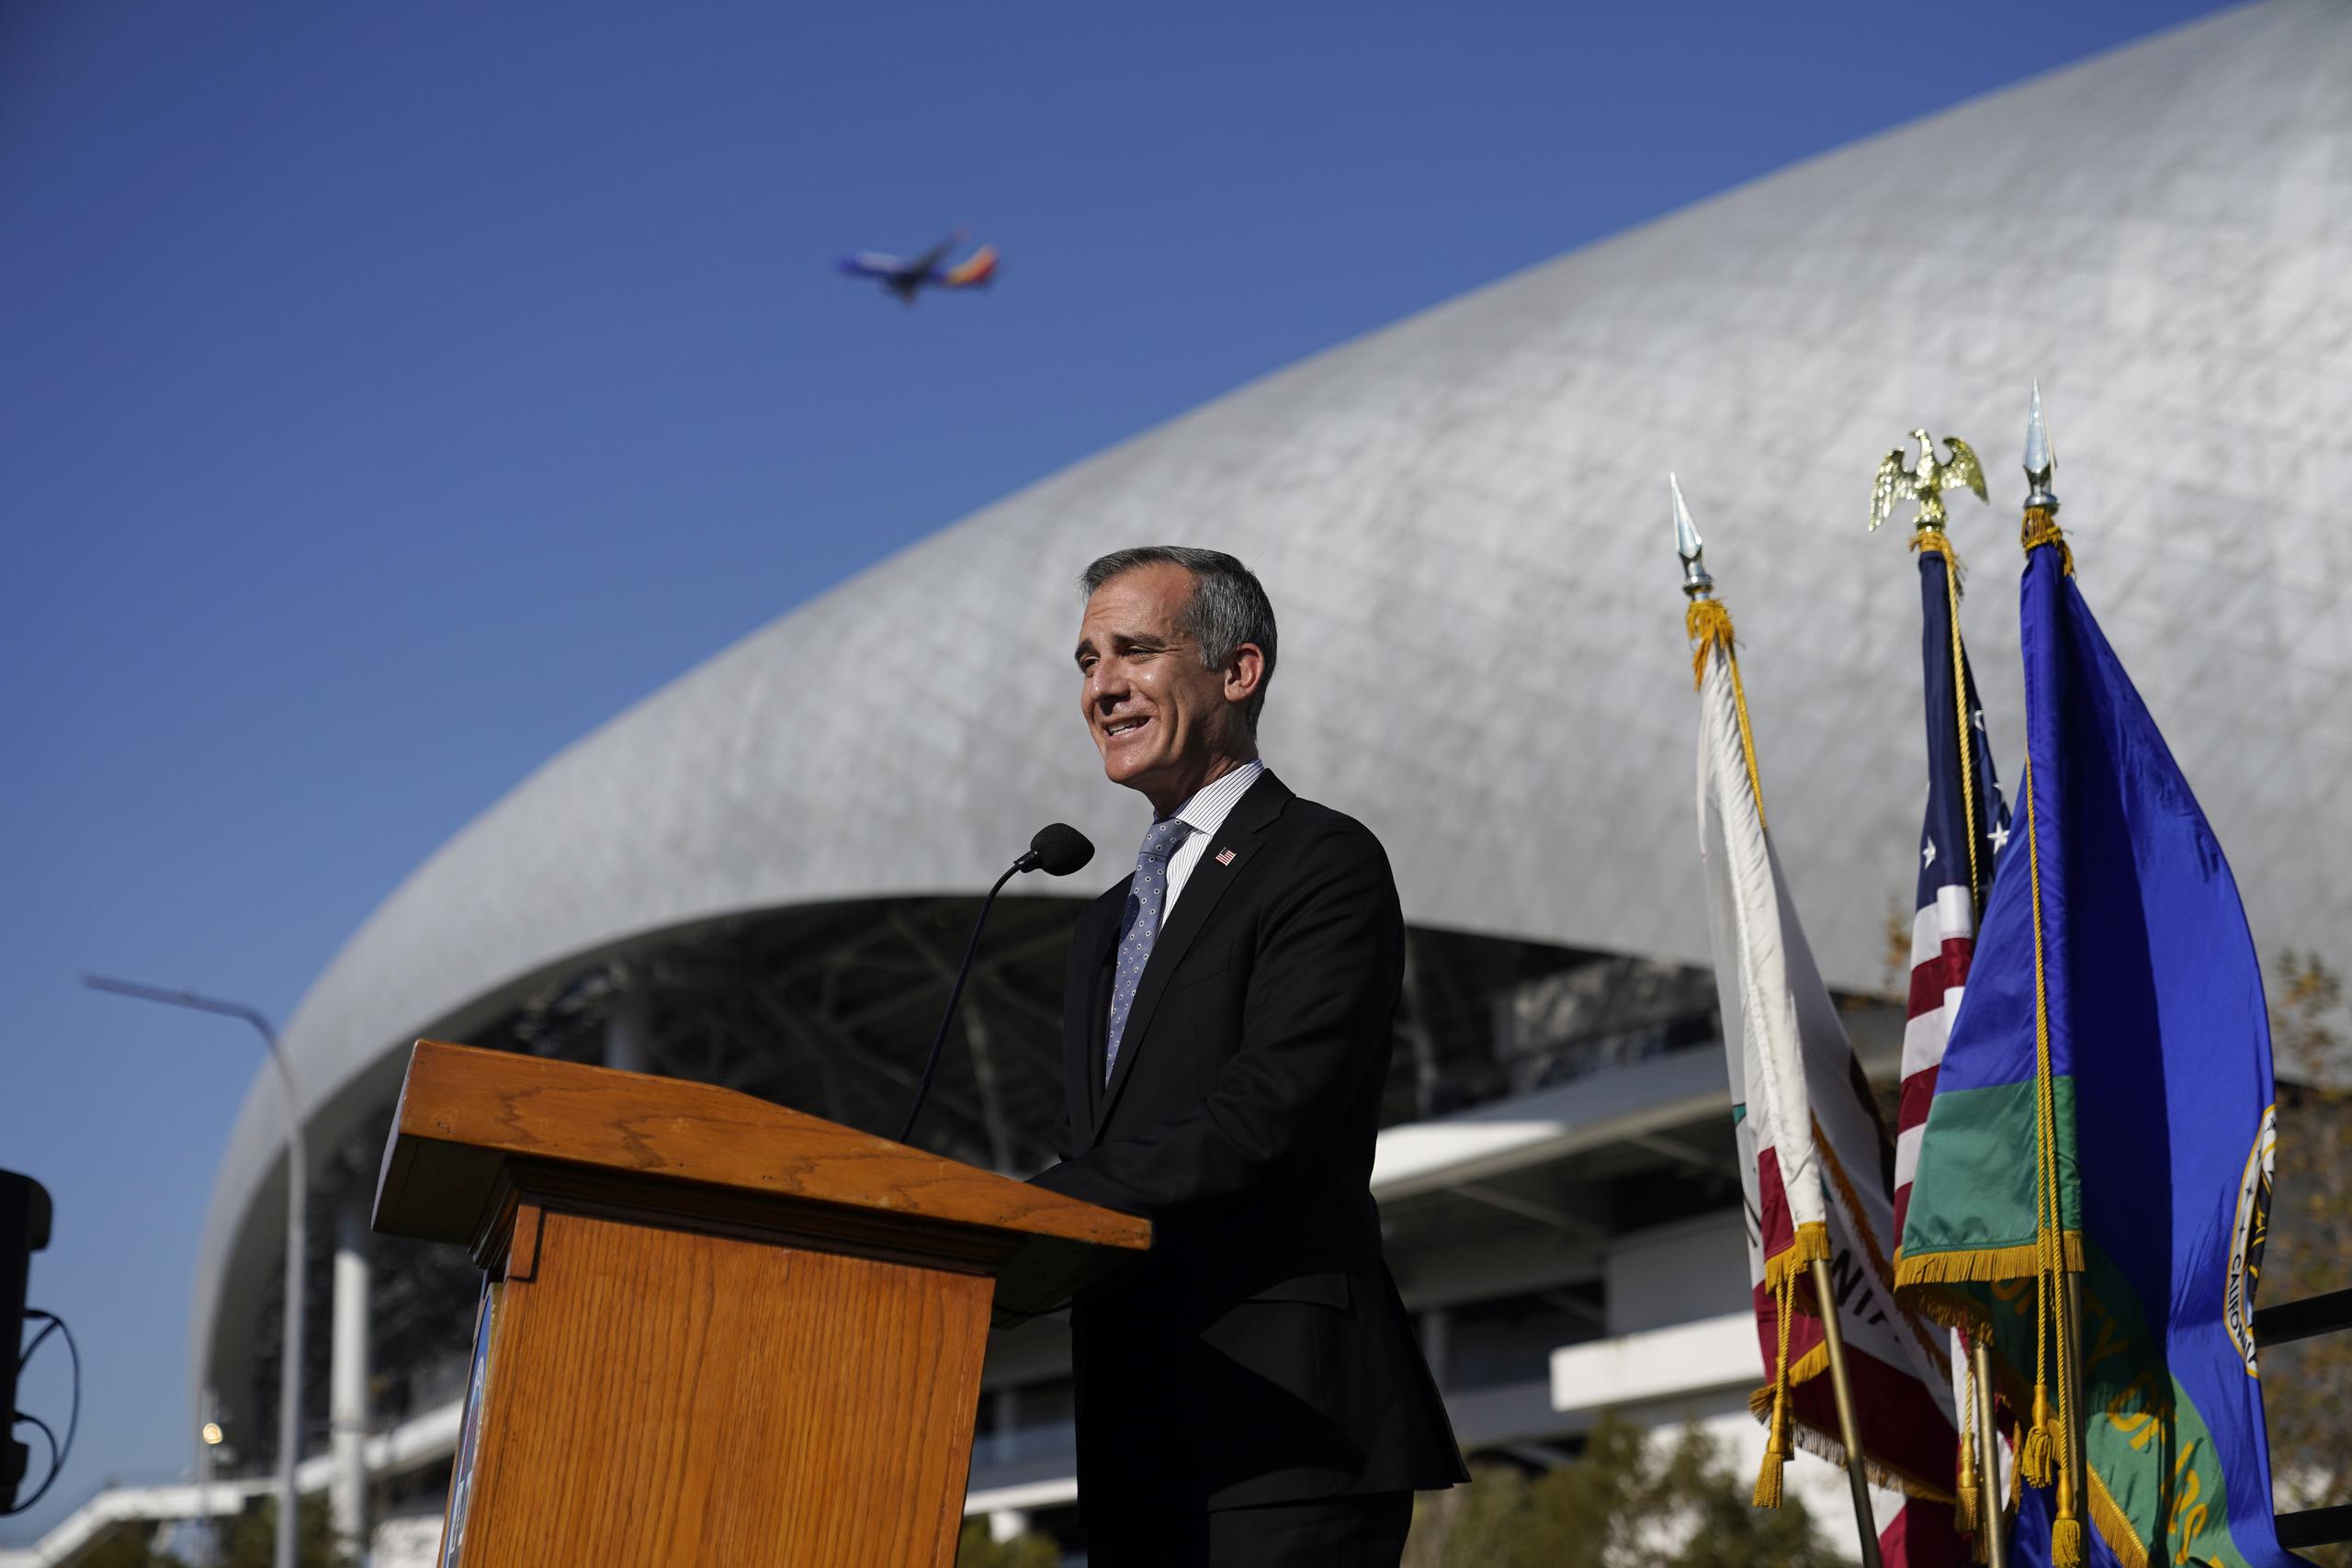 El alcalde de Los Angeles, Eric Garcetti, habla durante una rueda de prensa efectuada cerca del SoFi Stadium de Inglewood, California, el cual será sede del Super Bowl.